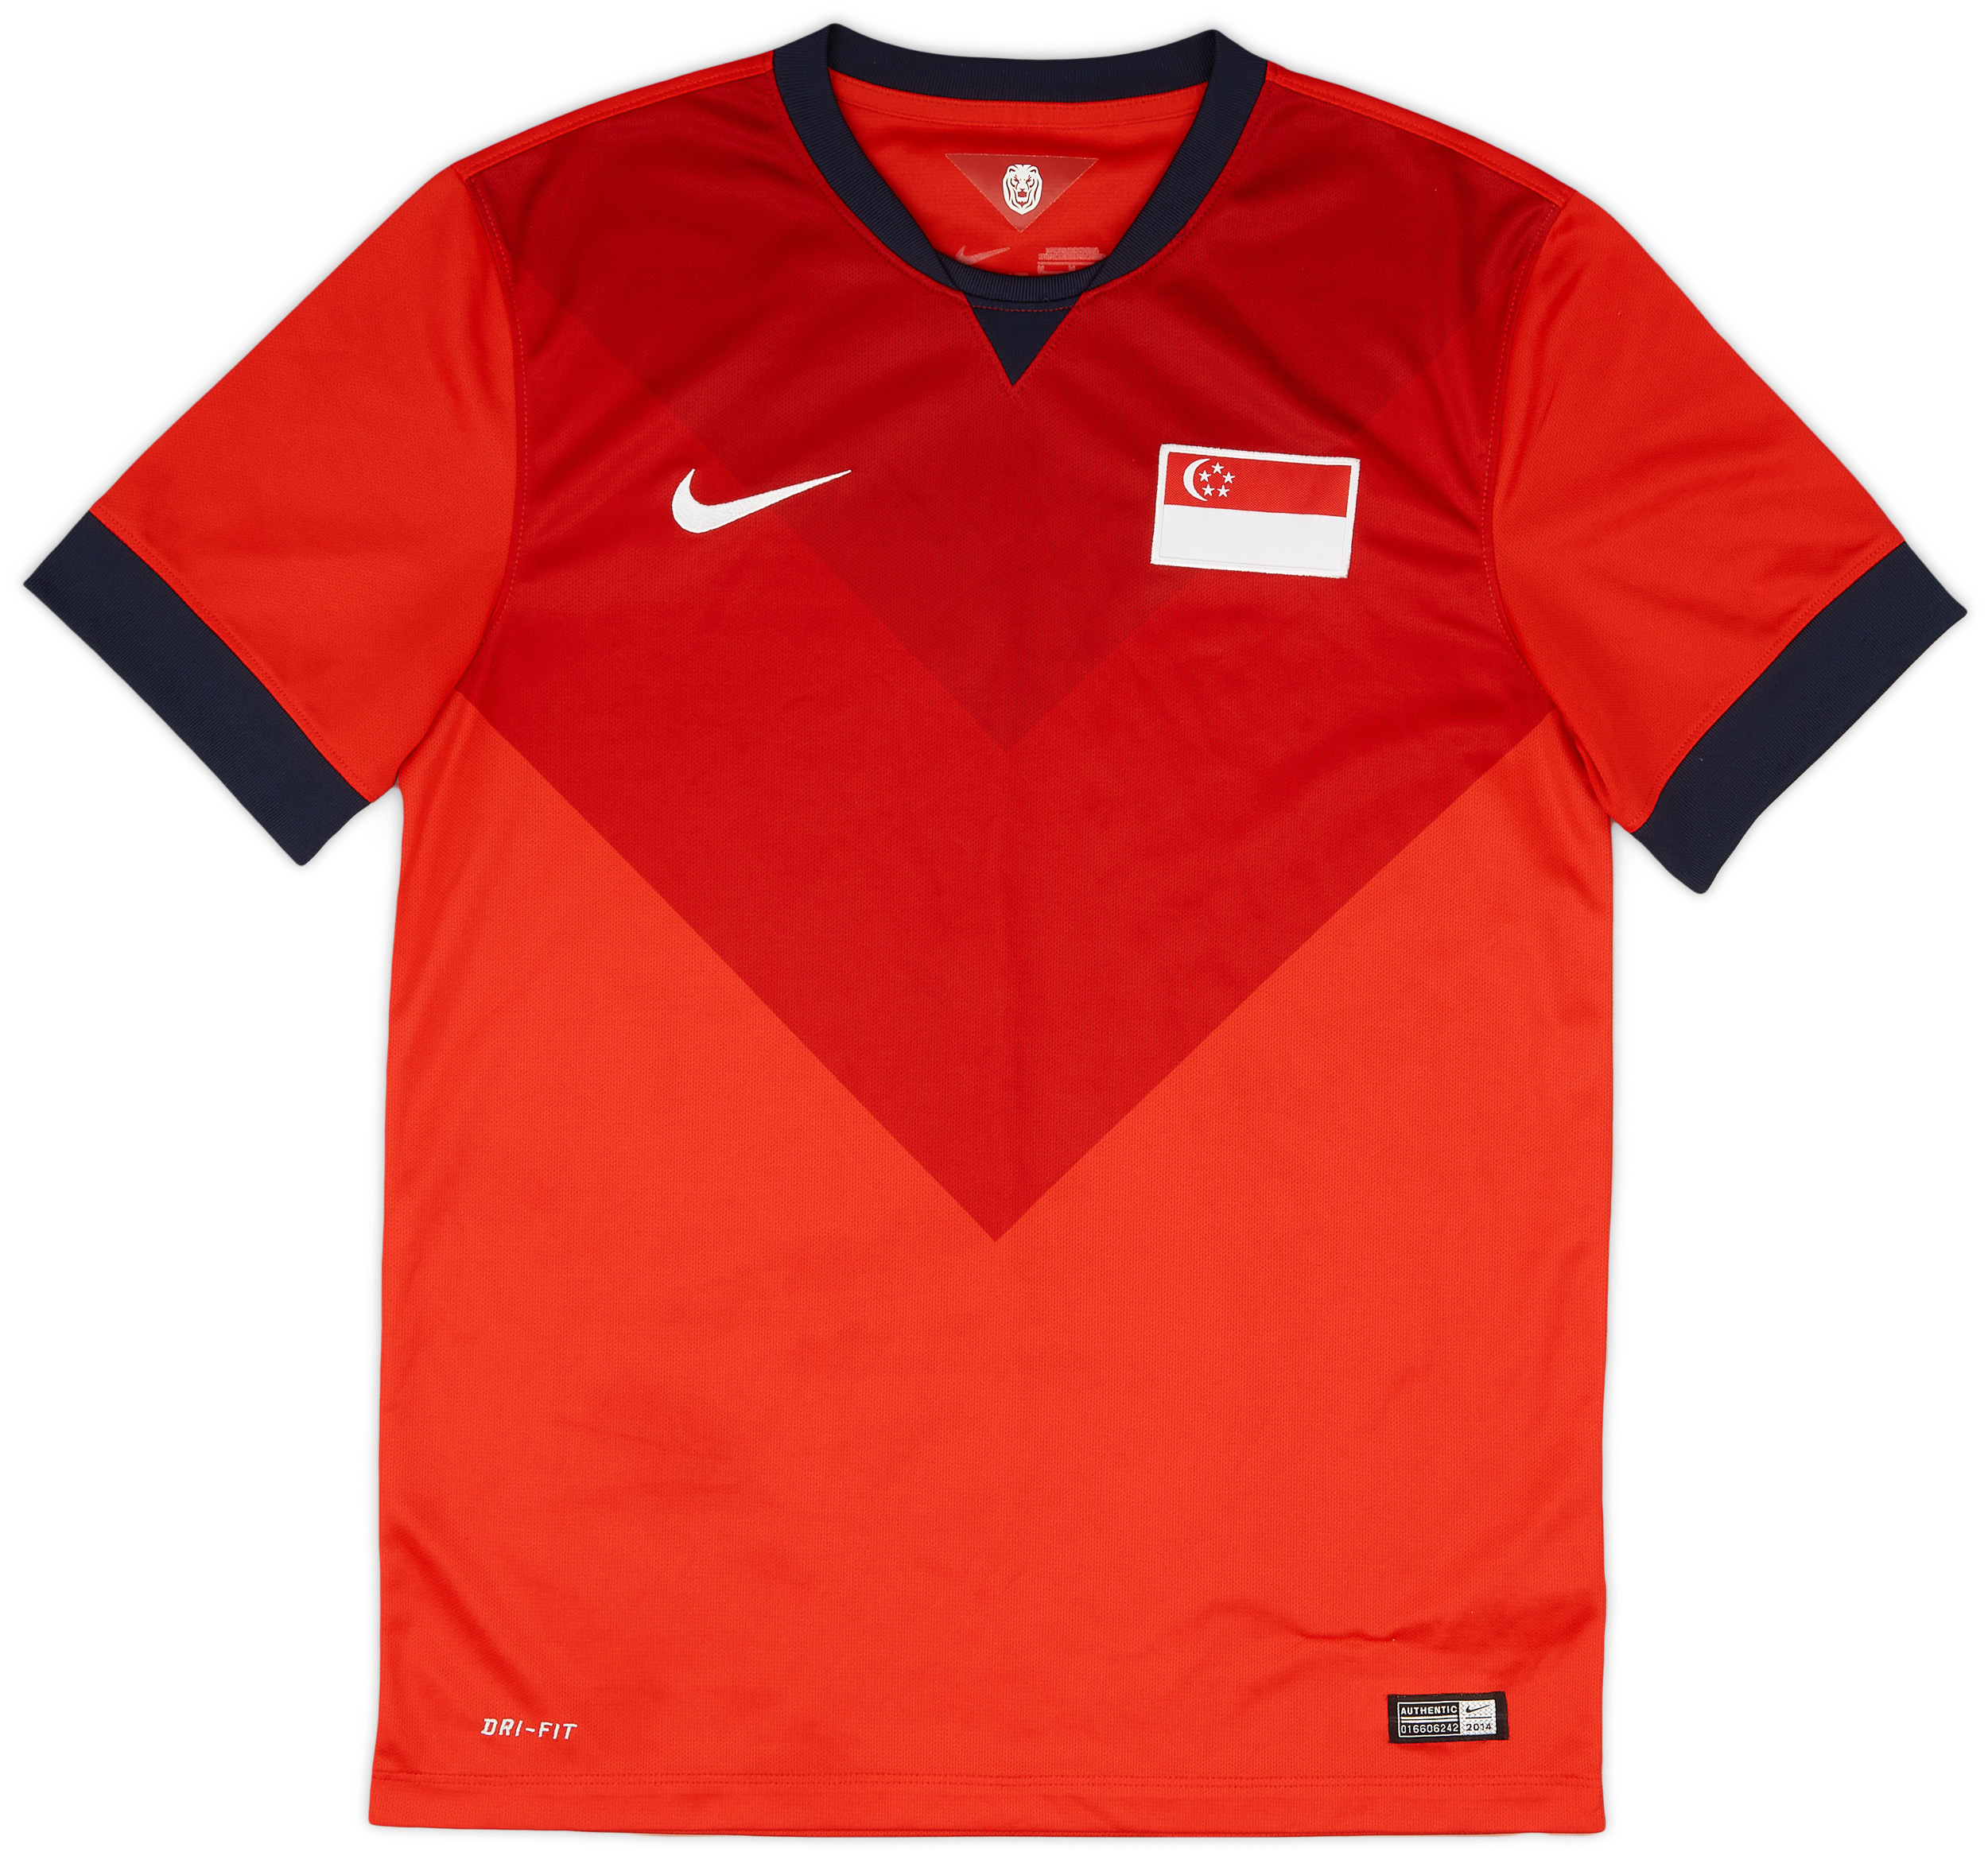 Retro Singapore Shirt